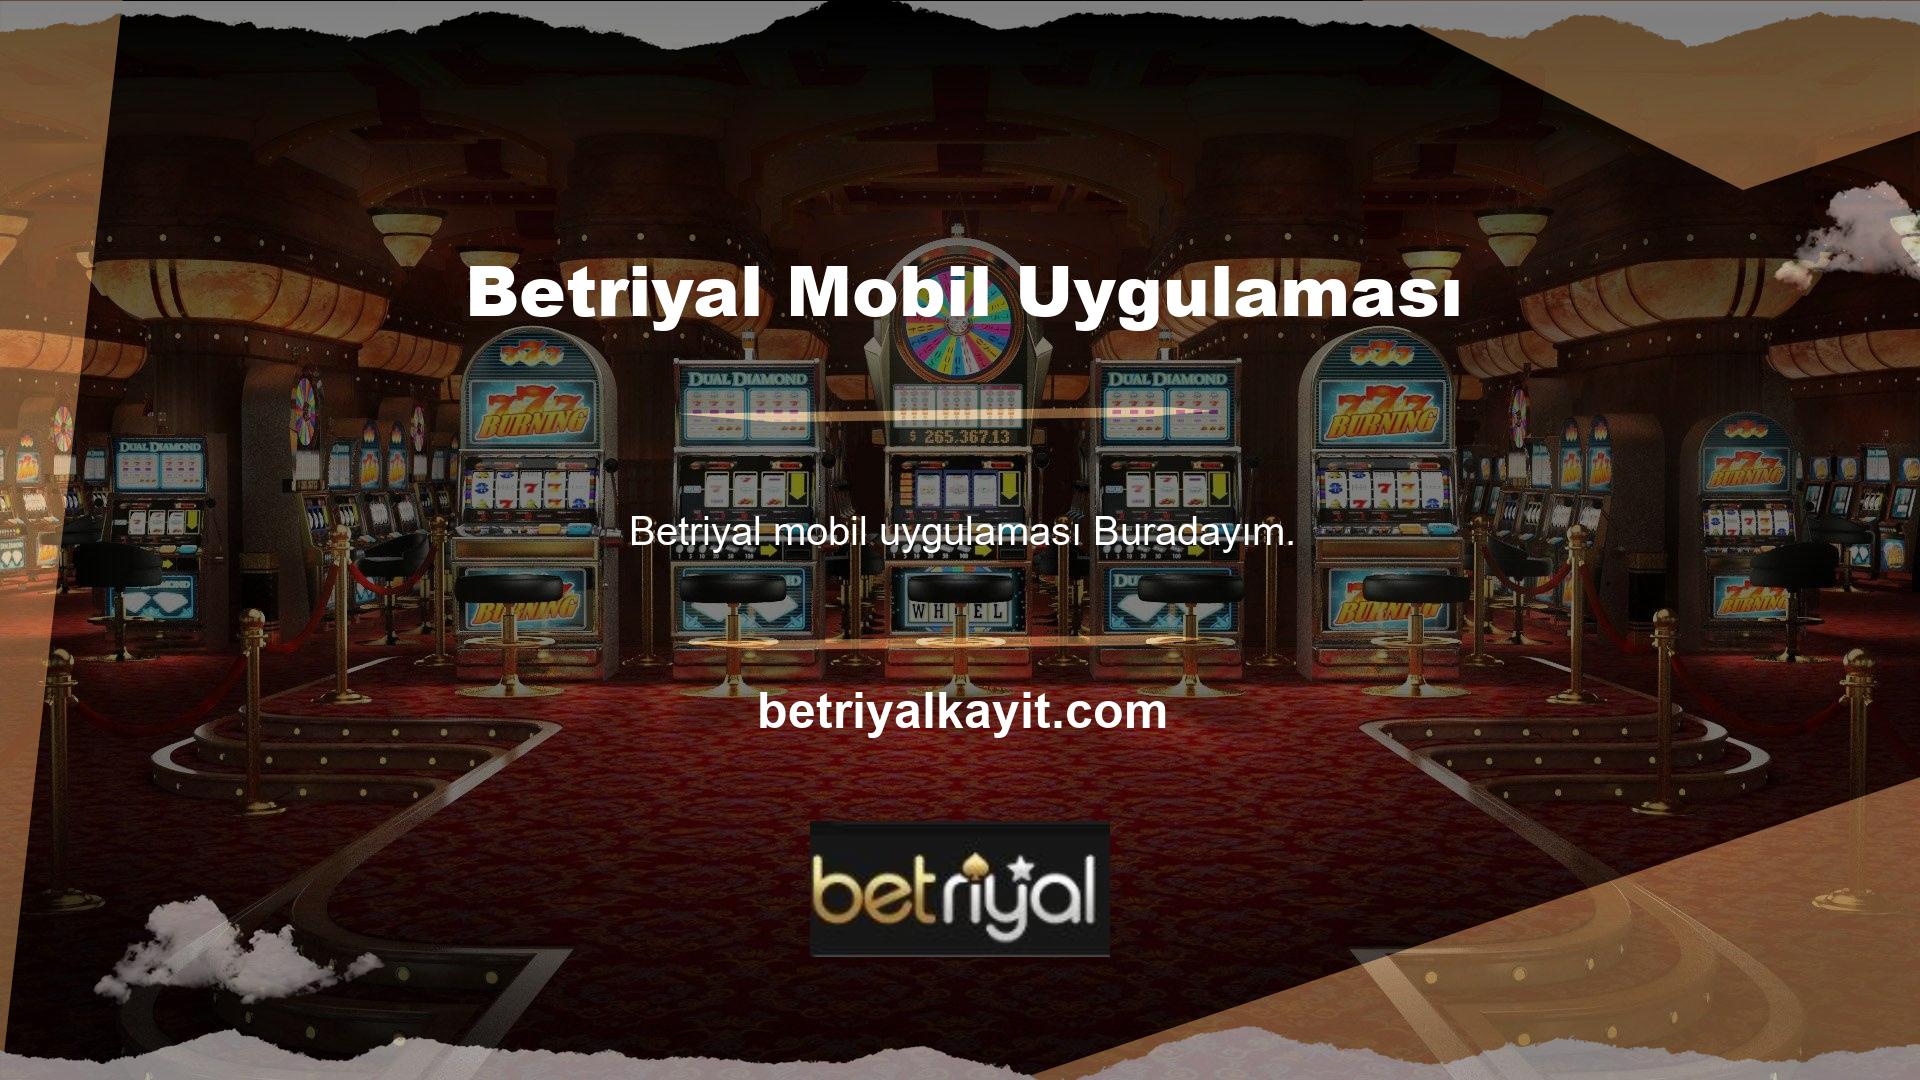 Aynı şekilde Betriyal mobil uygulamaları ile tüm bahis ürünlerine, oyun türlerine ve hizmetlerine erişim ve kullanım sağlanmaktadır